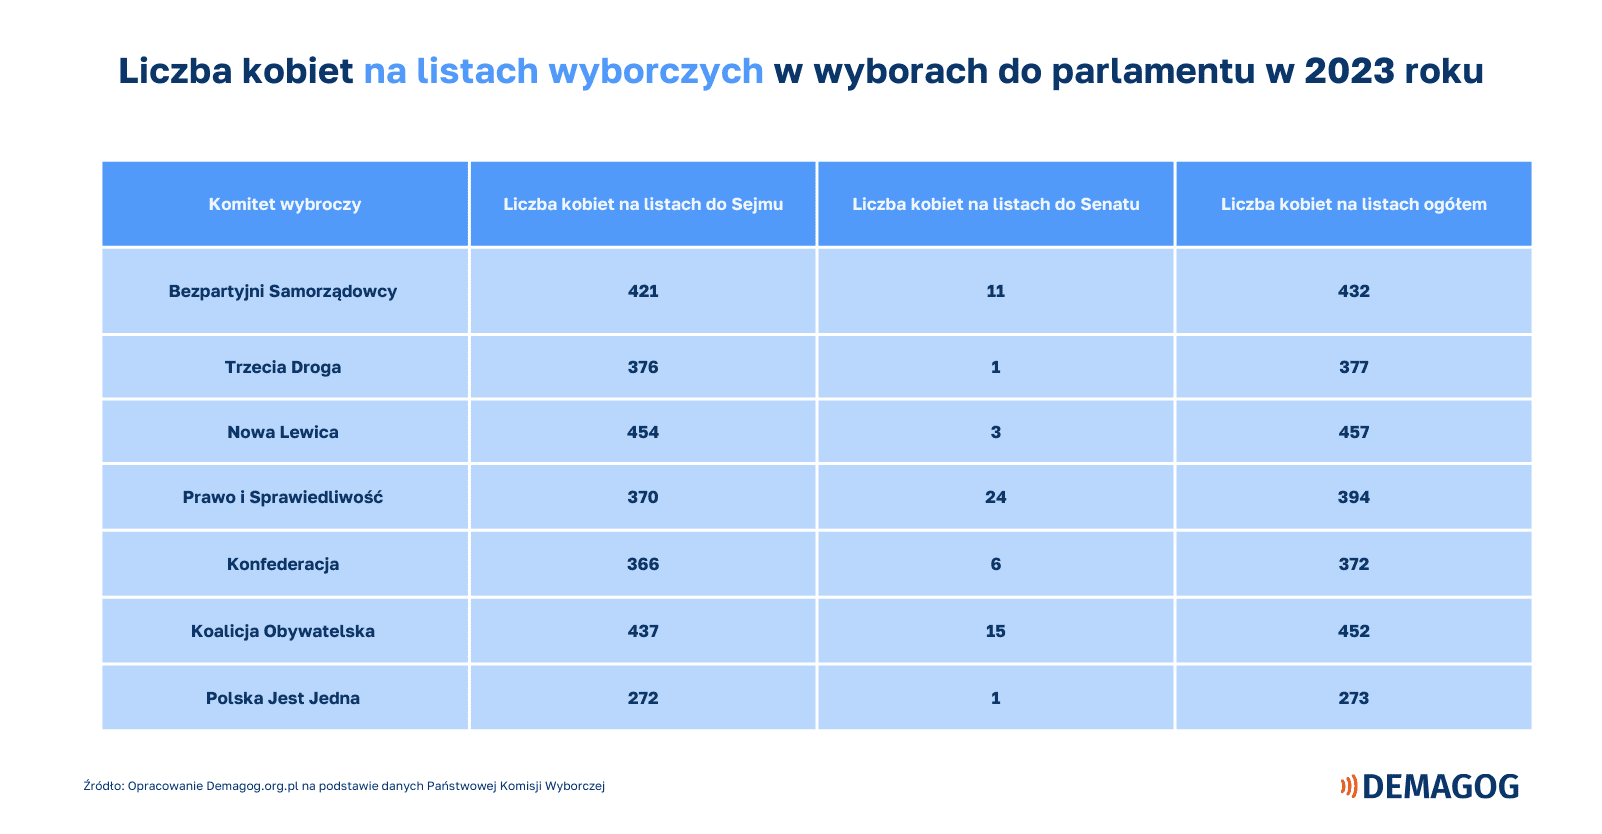 Tabela pokazuje ile kobiet znalazło się na listach wyborczych poszczególnych ogólnopolskich komitetów wyborczych.